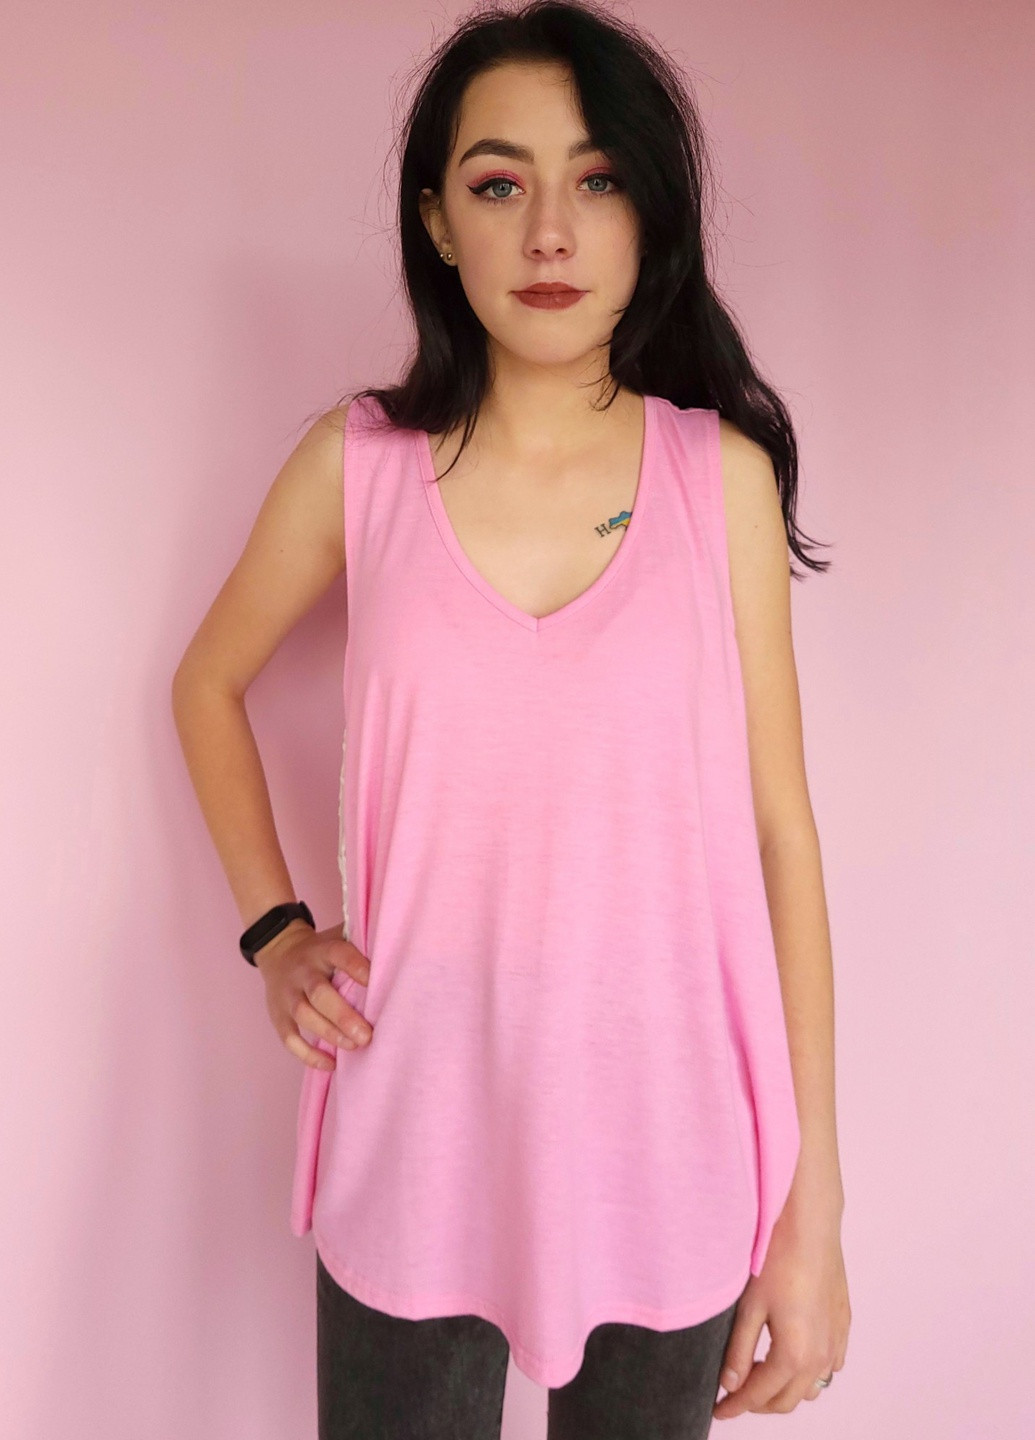 Майка женская удлиненная розовая со вставками гипюра 566 XL (48) G&N — 258349924